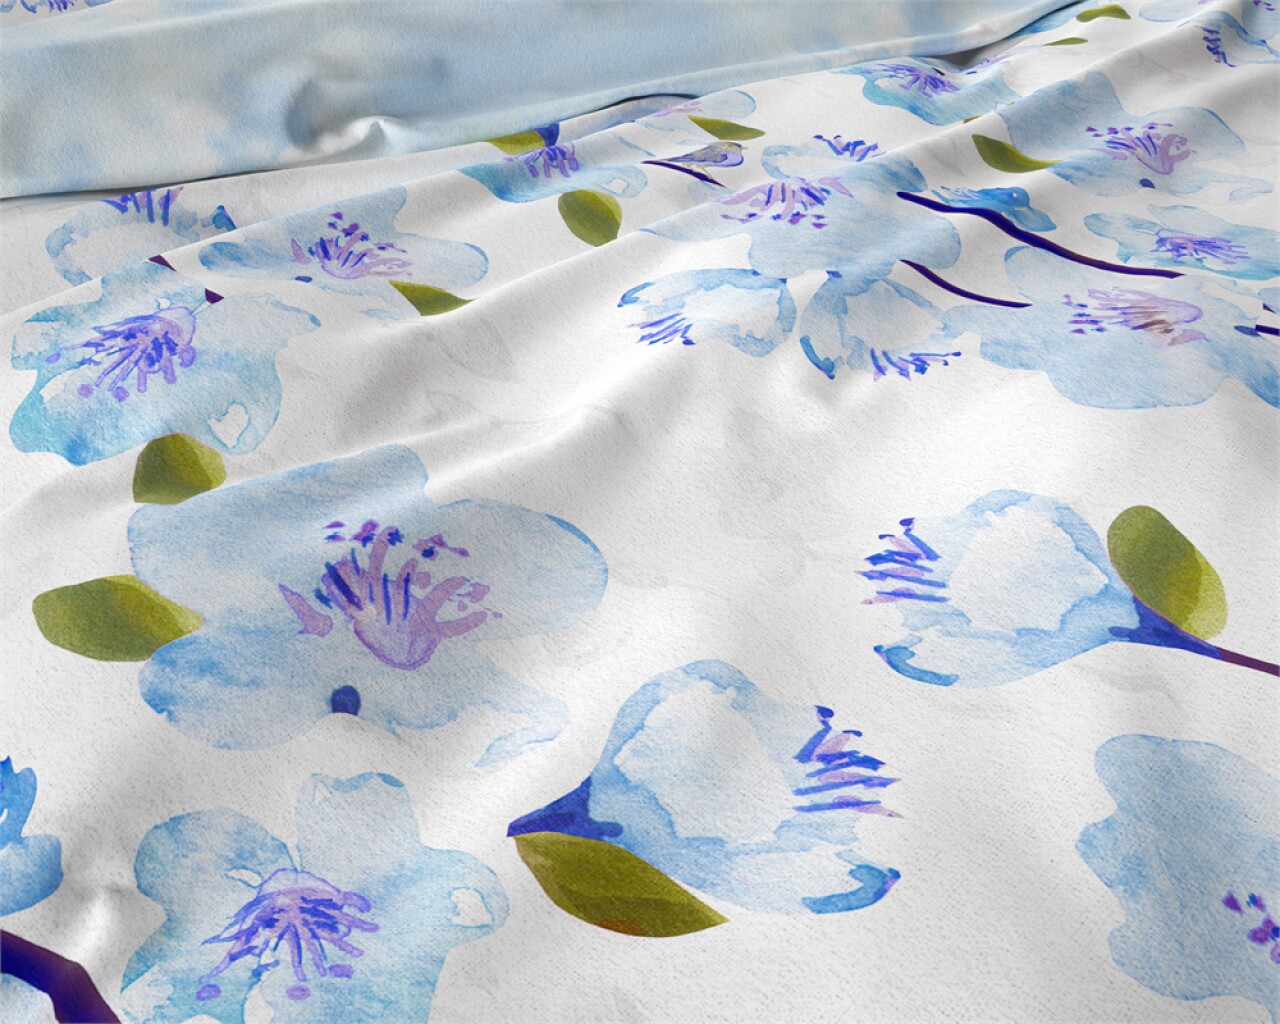 Lenjerie De Pat Dubla Sweet Flowers Turquoise, Royal Textile, 3 Piese, 200 X 220 Cm, 100% Bumbac Flanel, Alb/albastru